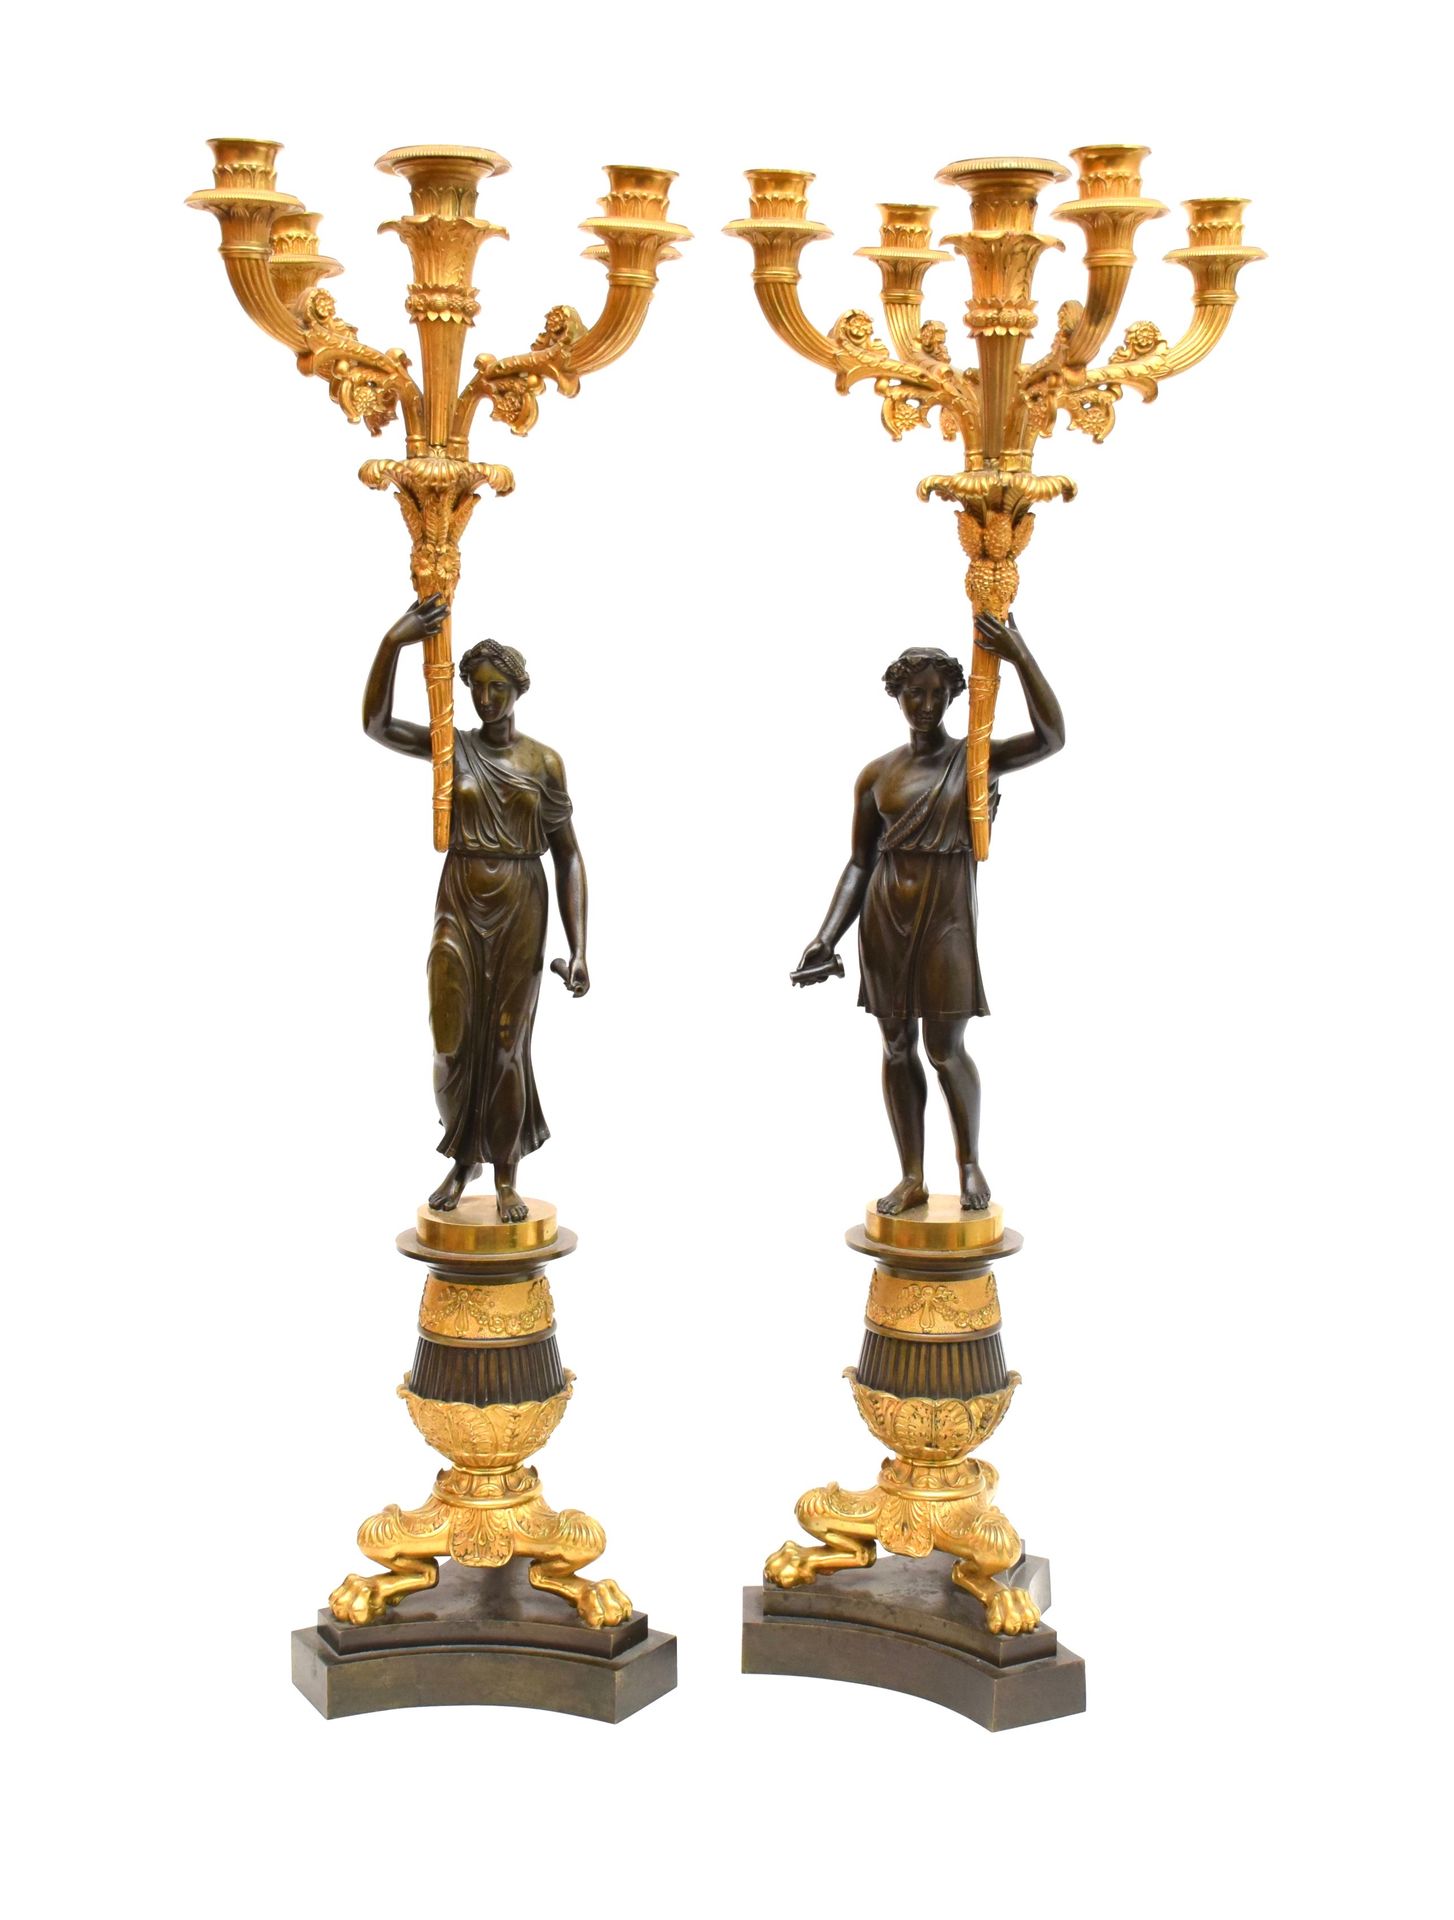 Null 一对烛台

 鎏金青铜器，有五条光臂，上面有一个古色古香的人物支撑，有三个爪子脚，放在一个黑色大理石底座上。

帝国-复兴时期风格

高度：72.5厘&hellip;